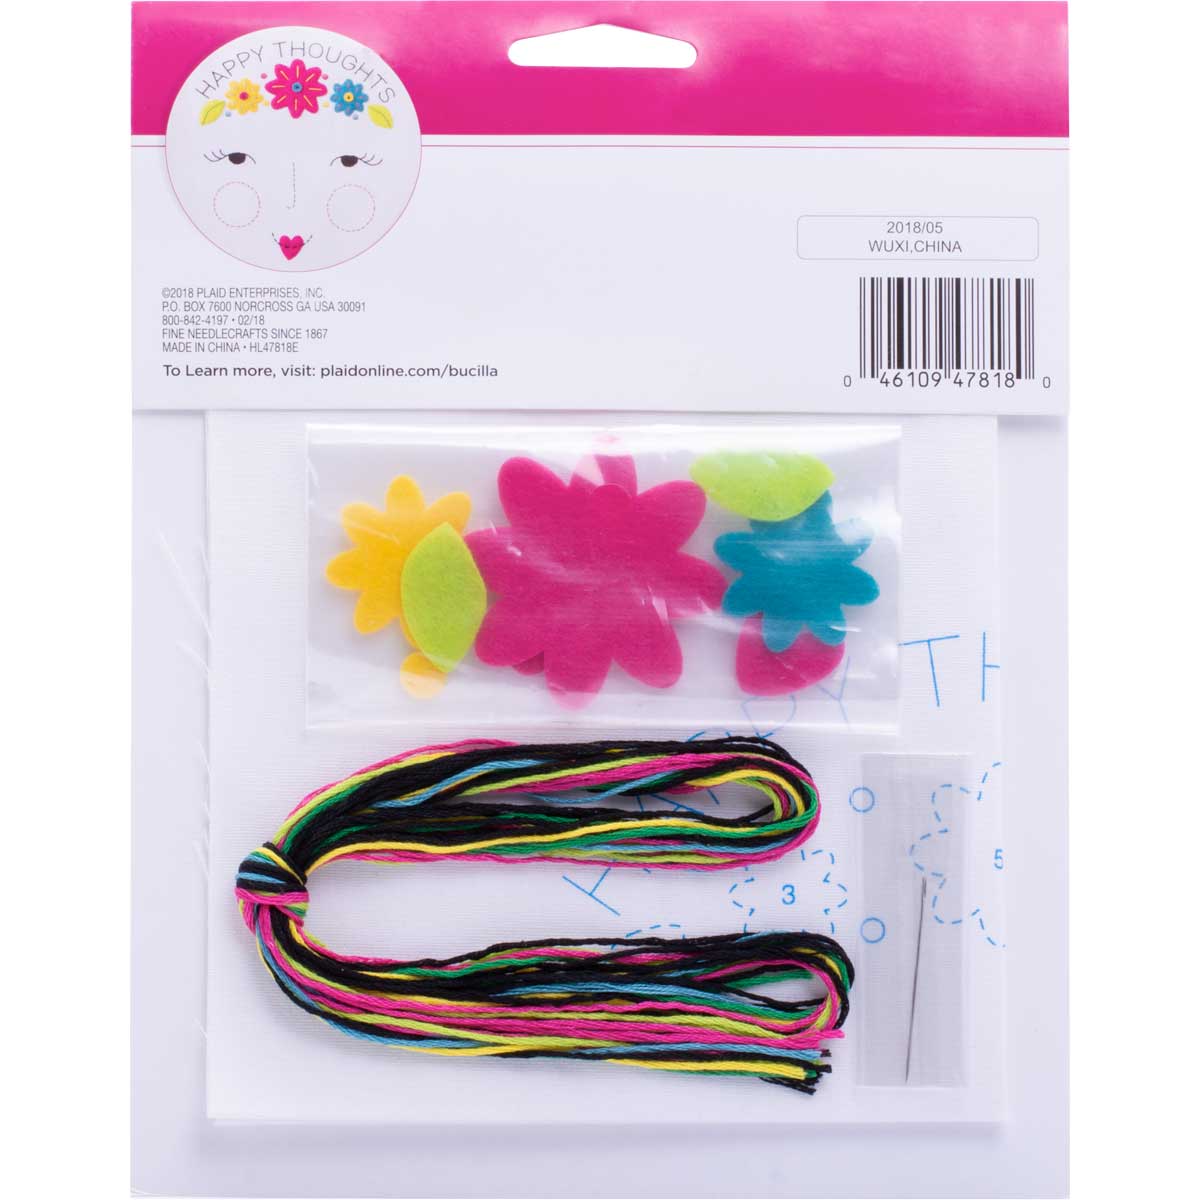 Bucilla ® My 1st Stitch™ - Stamped Cross Stitch Kits - Happy Thoughts - 47818E